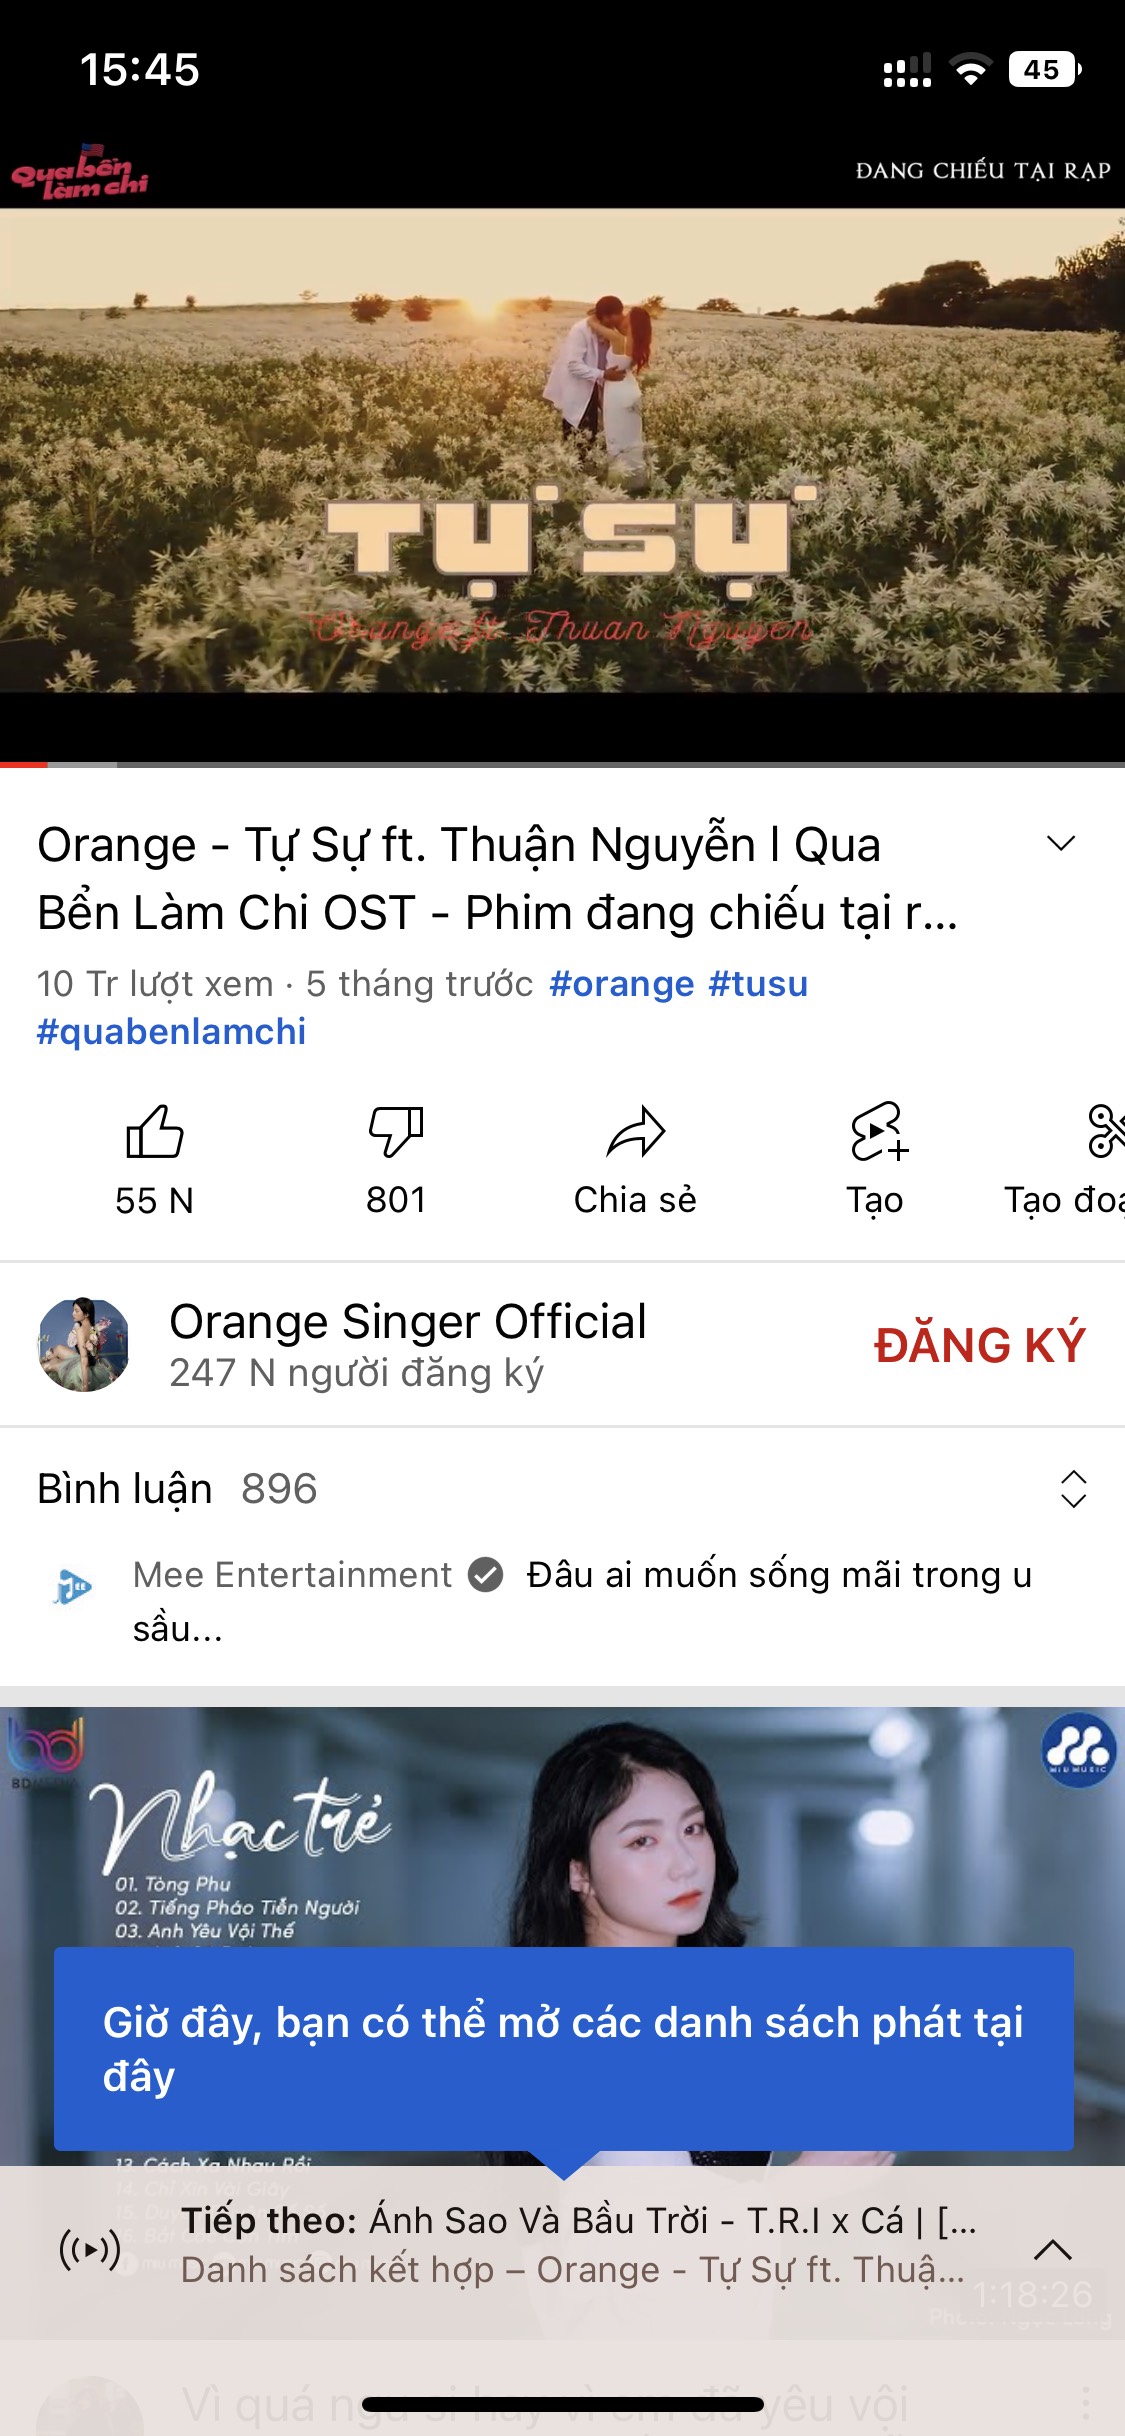 uYouPlus - Phiên bản "YouTube Vanced" dành cho iOS